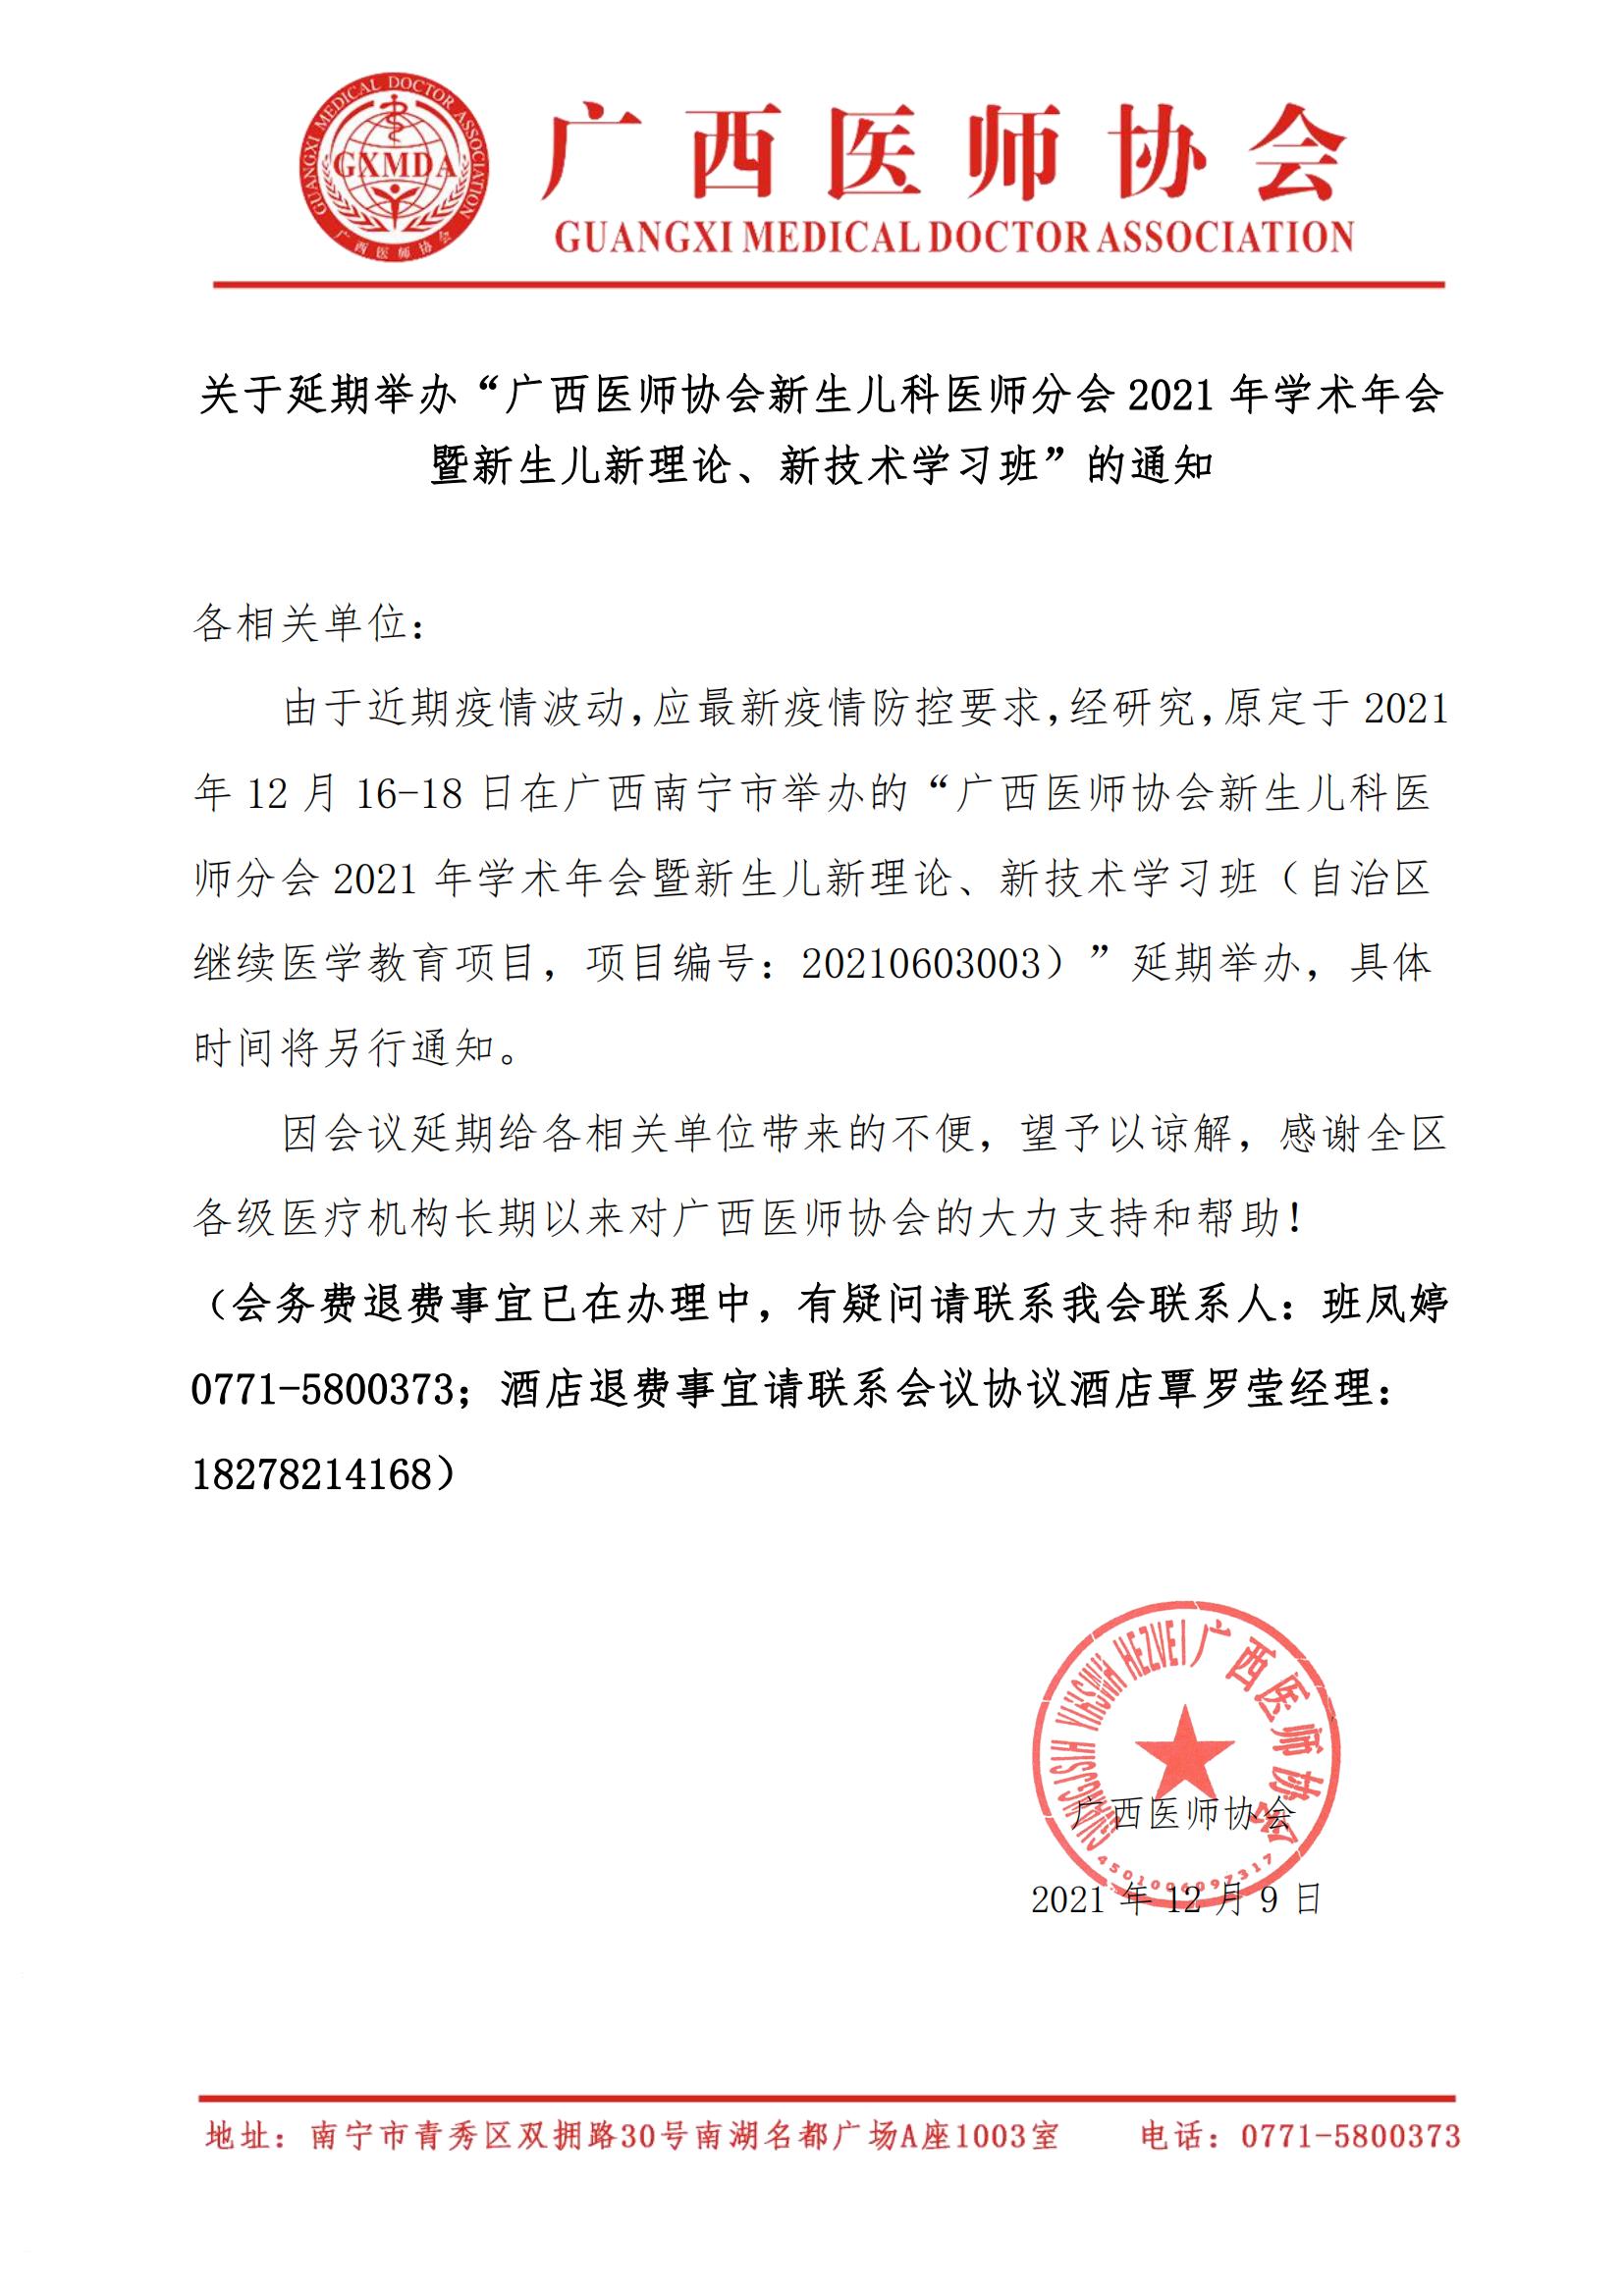 关于延期举办广西医师协会新生儿科医师分会分会2021年学术年会的通知_00.jpg